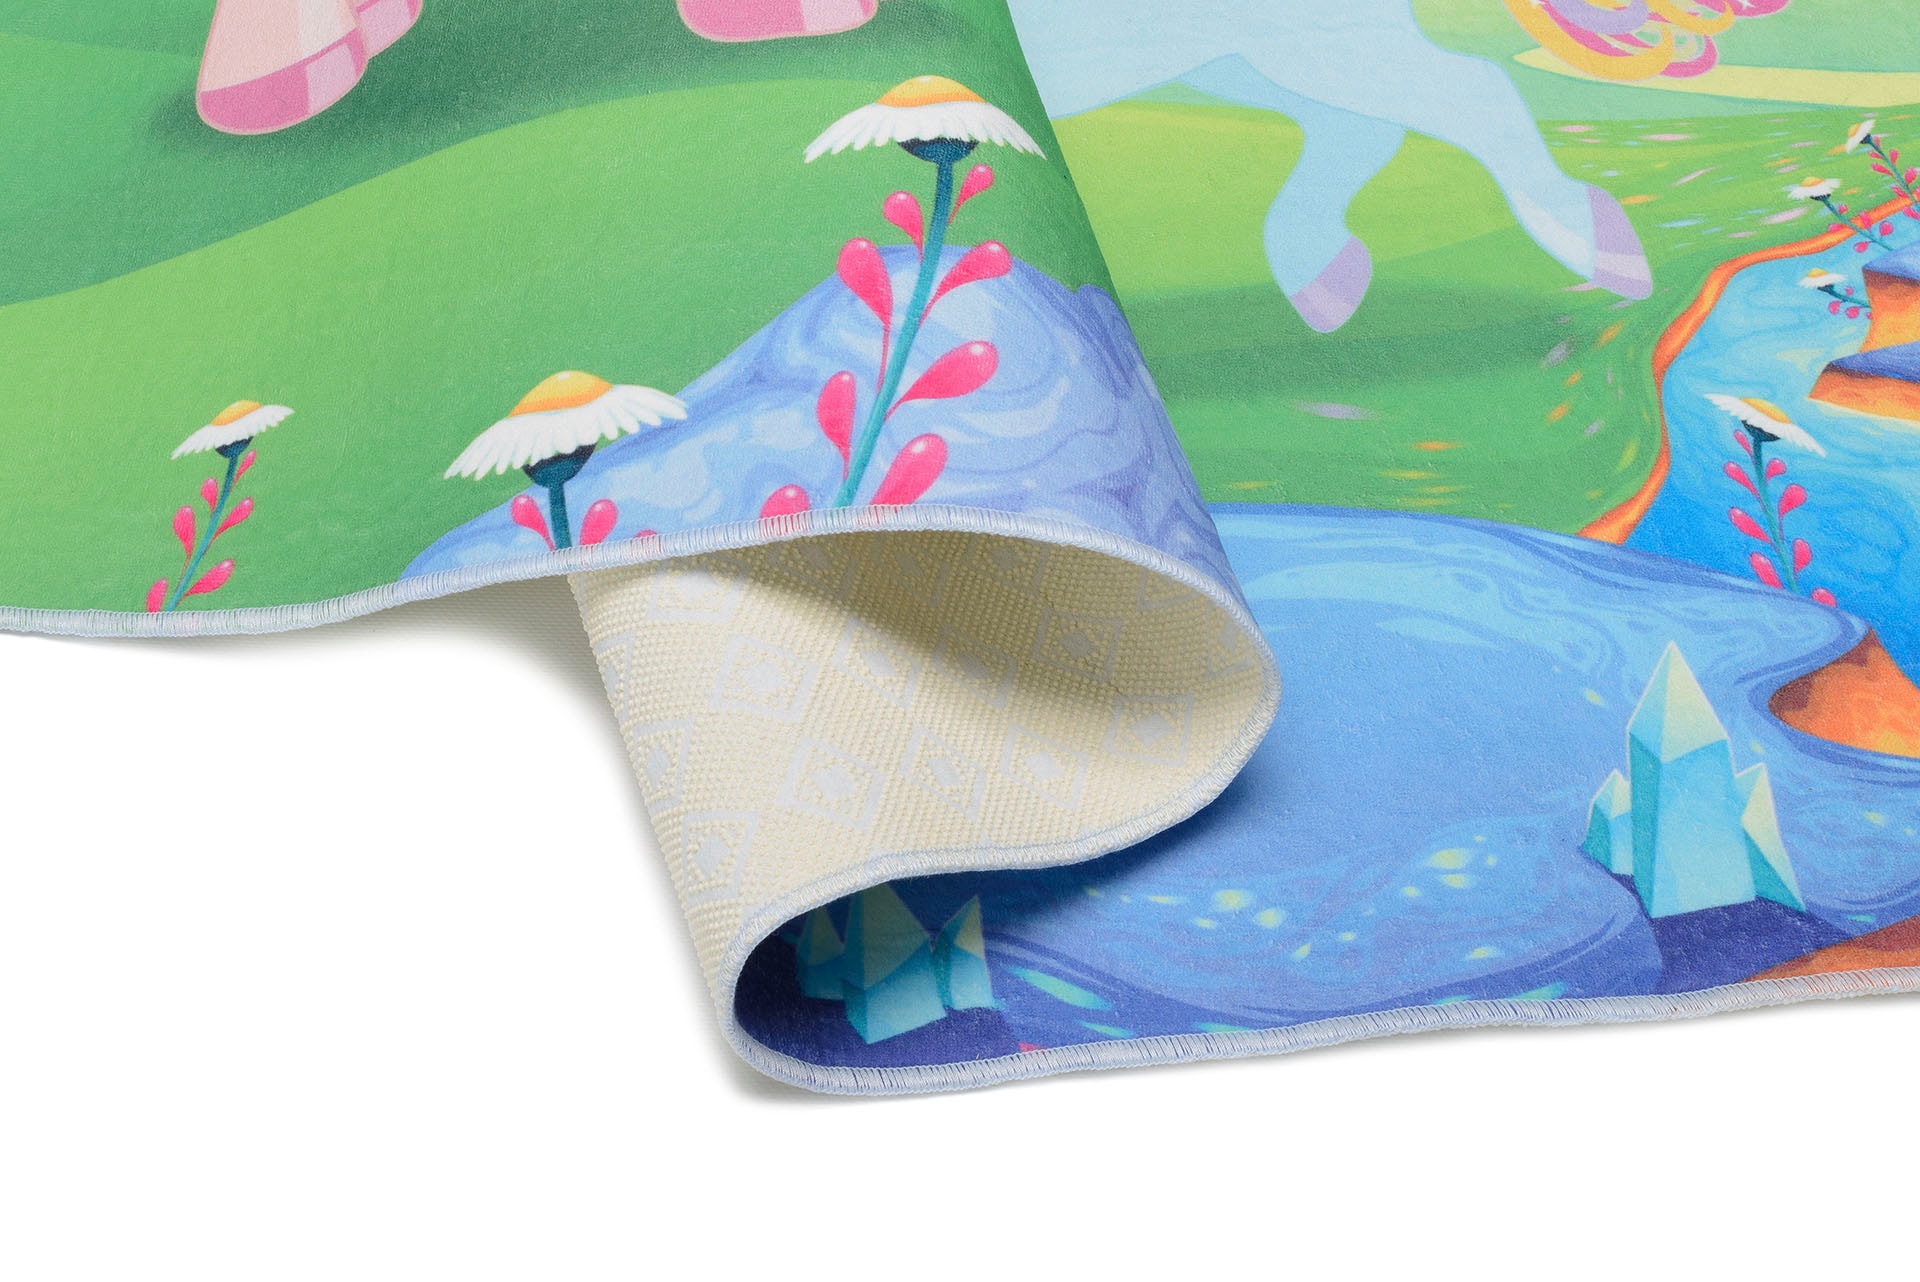 Böing Carpet Kinderteppich »Einhorn«, rechteckig, bedruckt, Motiv Einhörner & Regenbogen, waschbar, Kinderzimmer